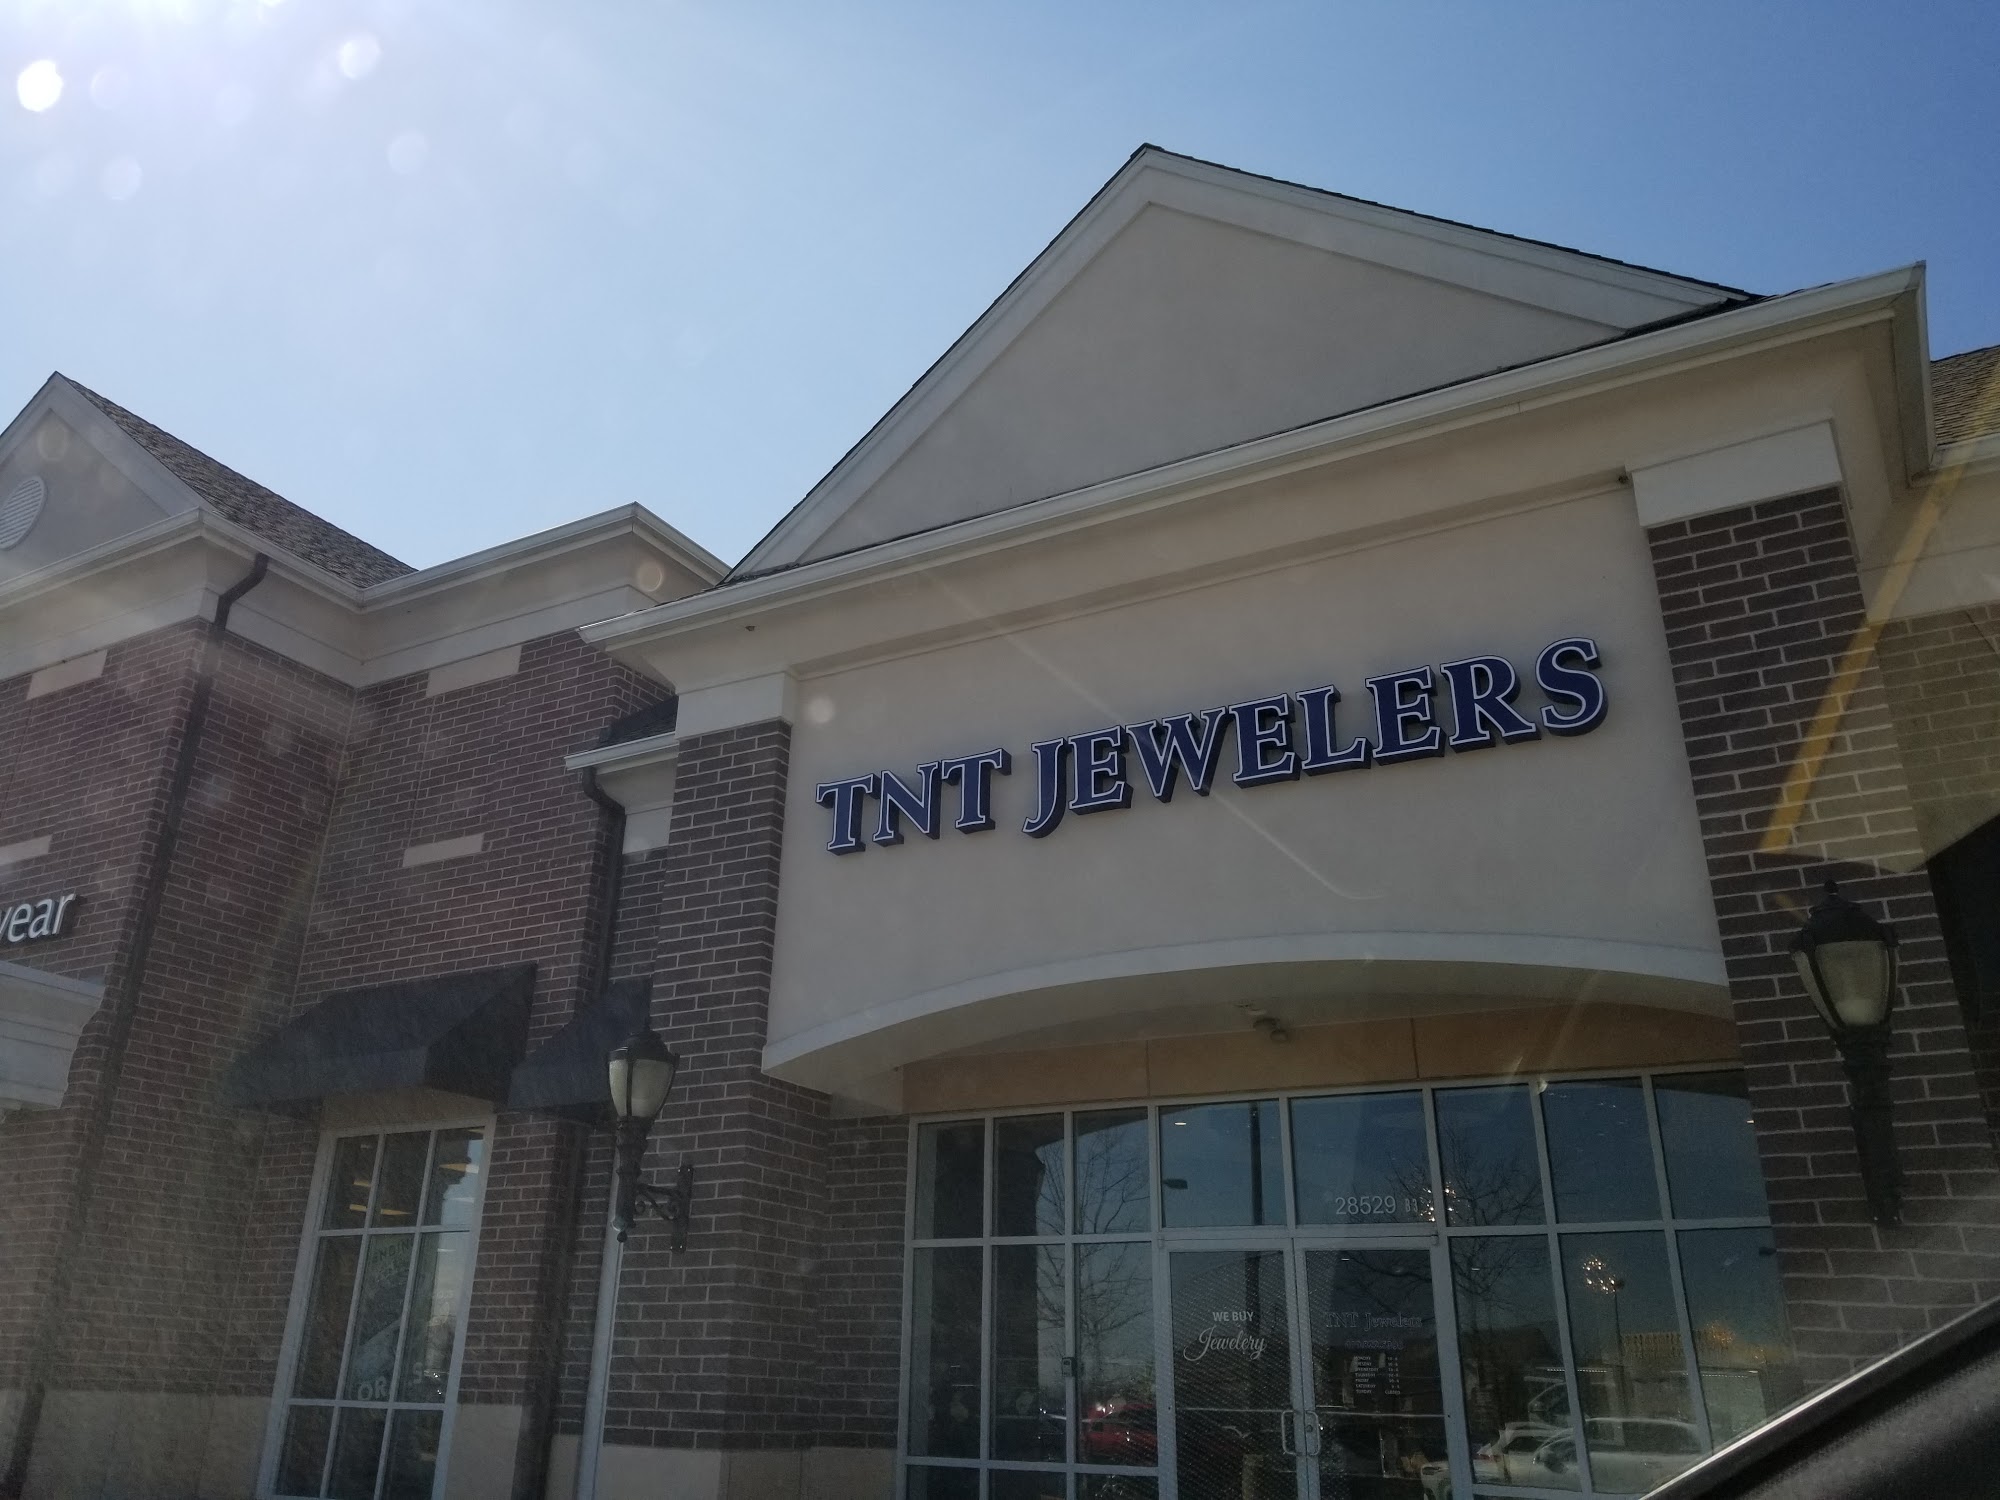 TNT Jewelers